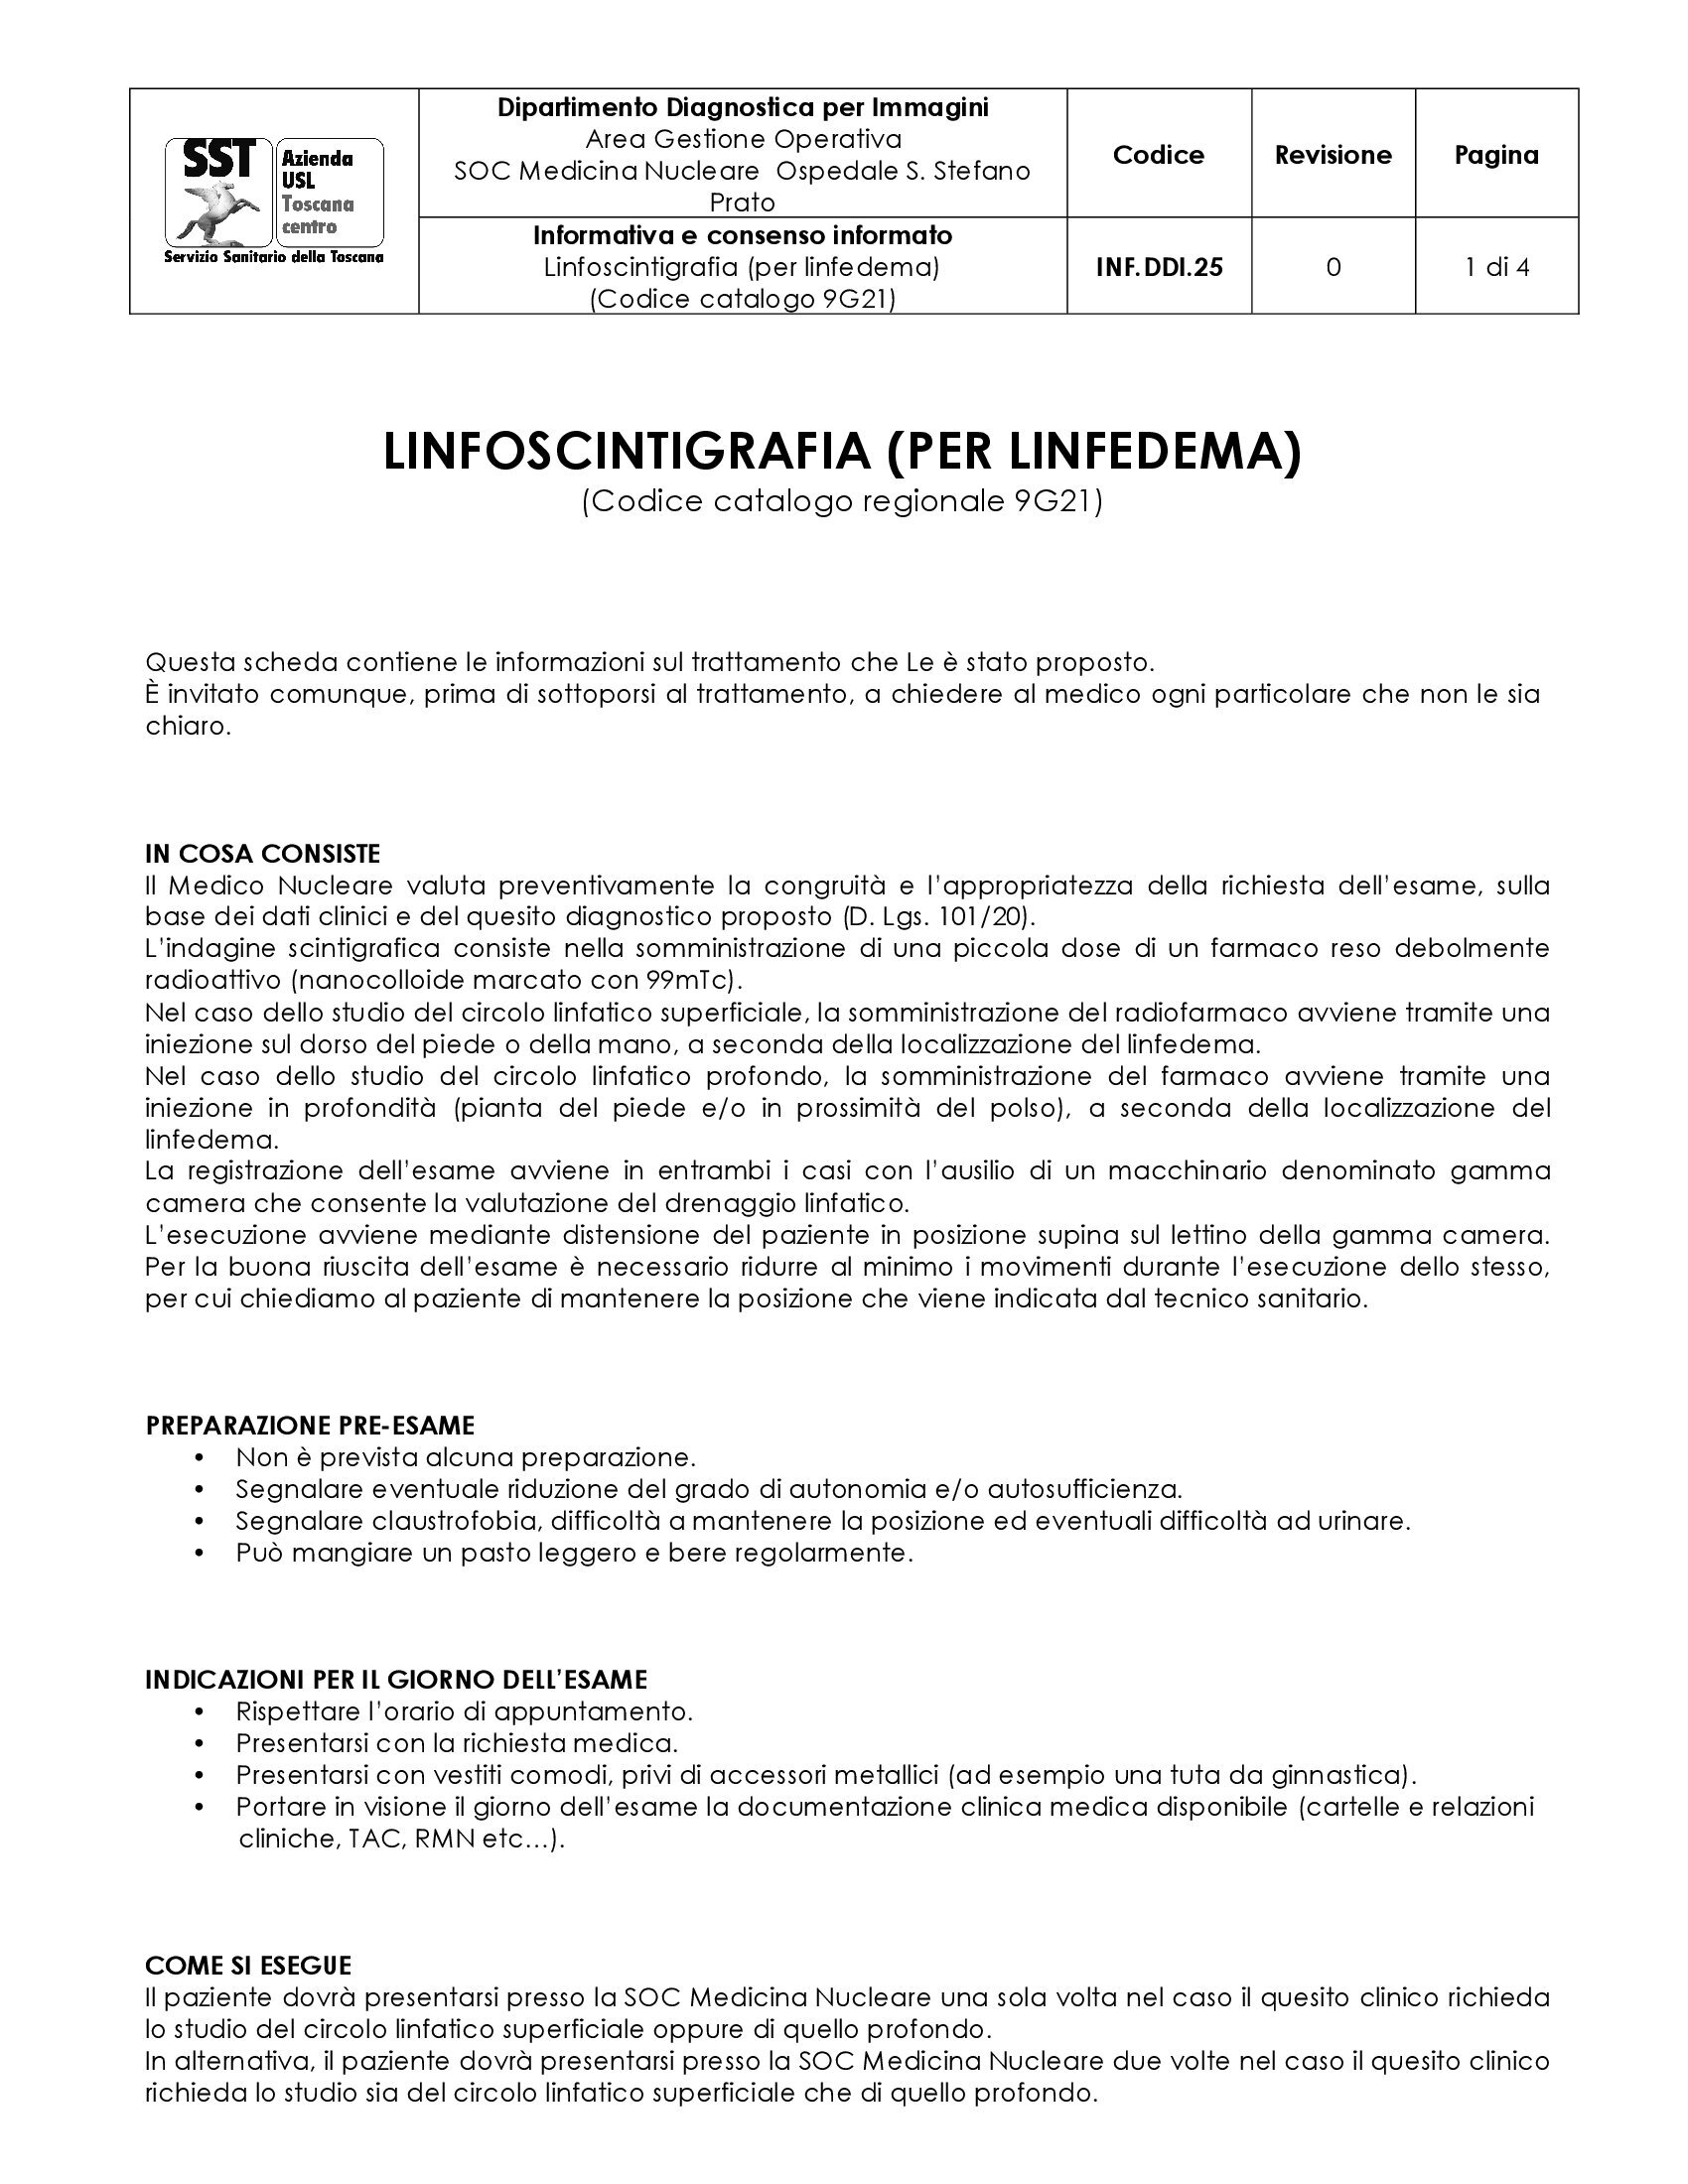 INF.DDI.25 Linfoscintigrafia (per linfedema) (Codice catalogo 9G21)